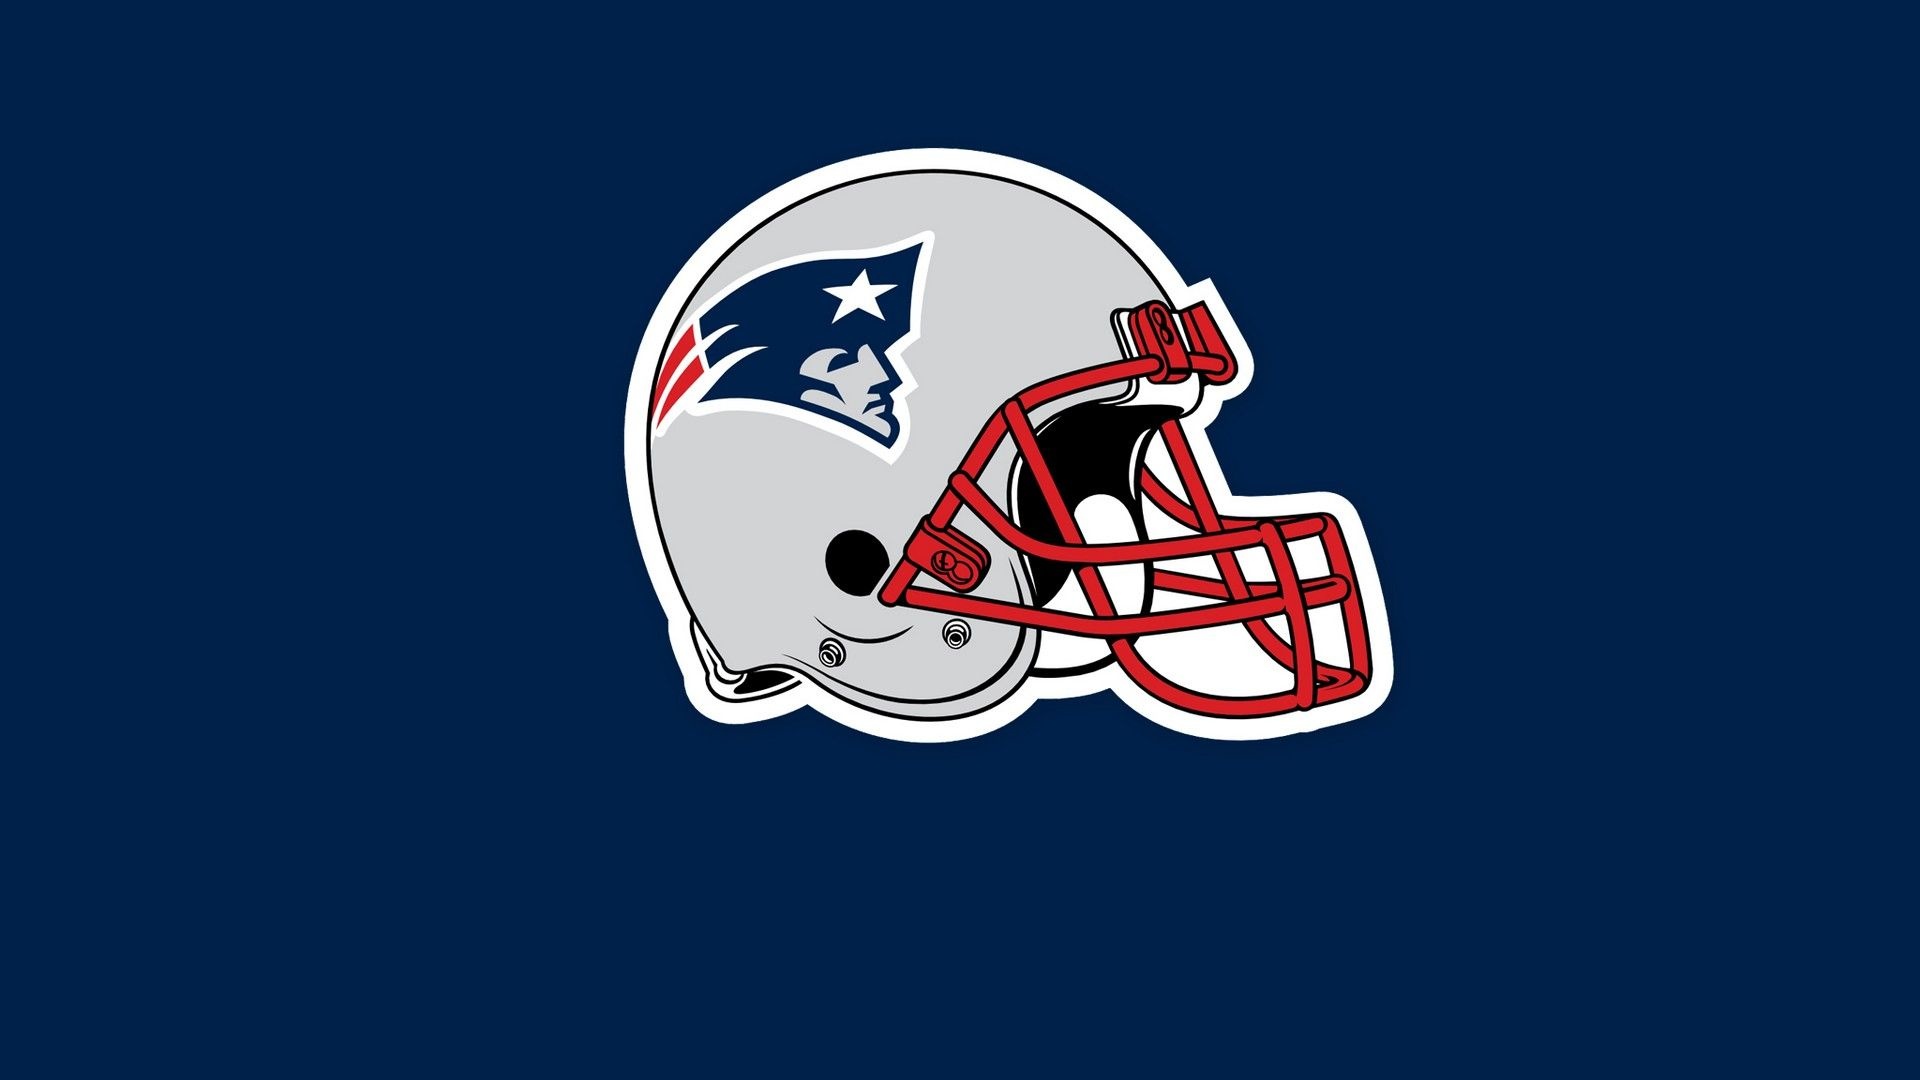 New England Patriots, NFL football, Patriots logo, iPhone wallpaper, 1920x1080 Full HD Desktop